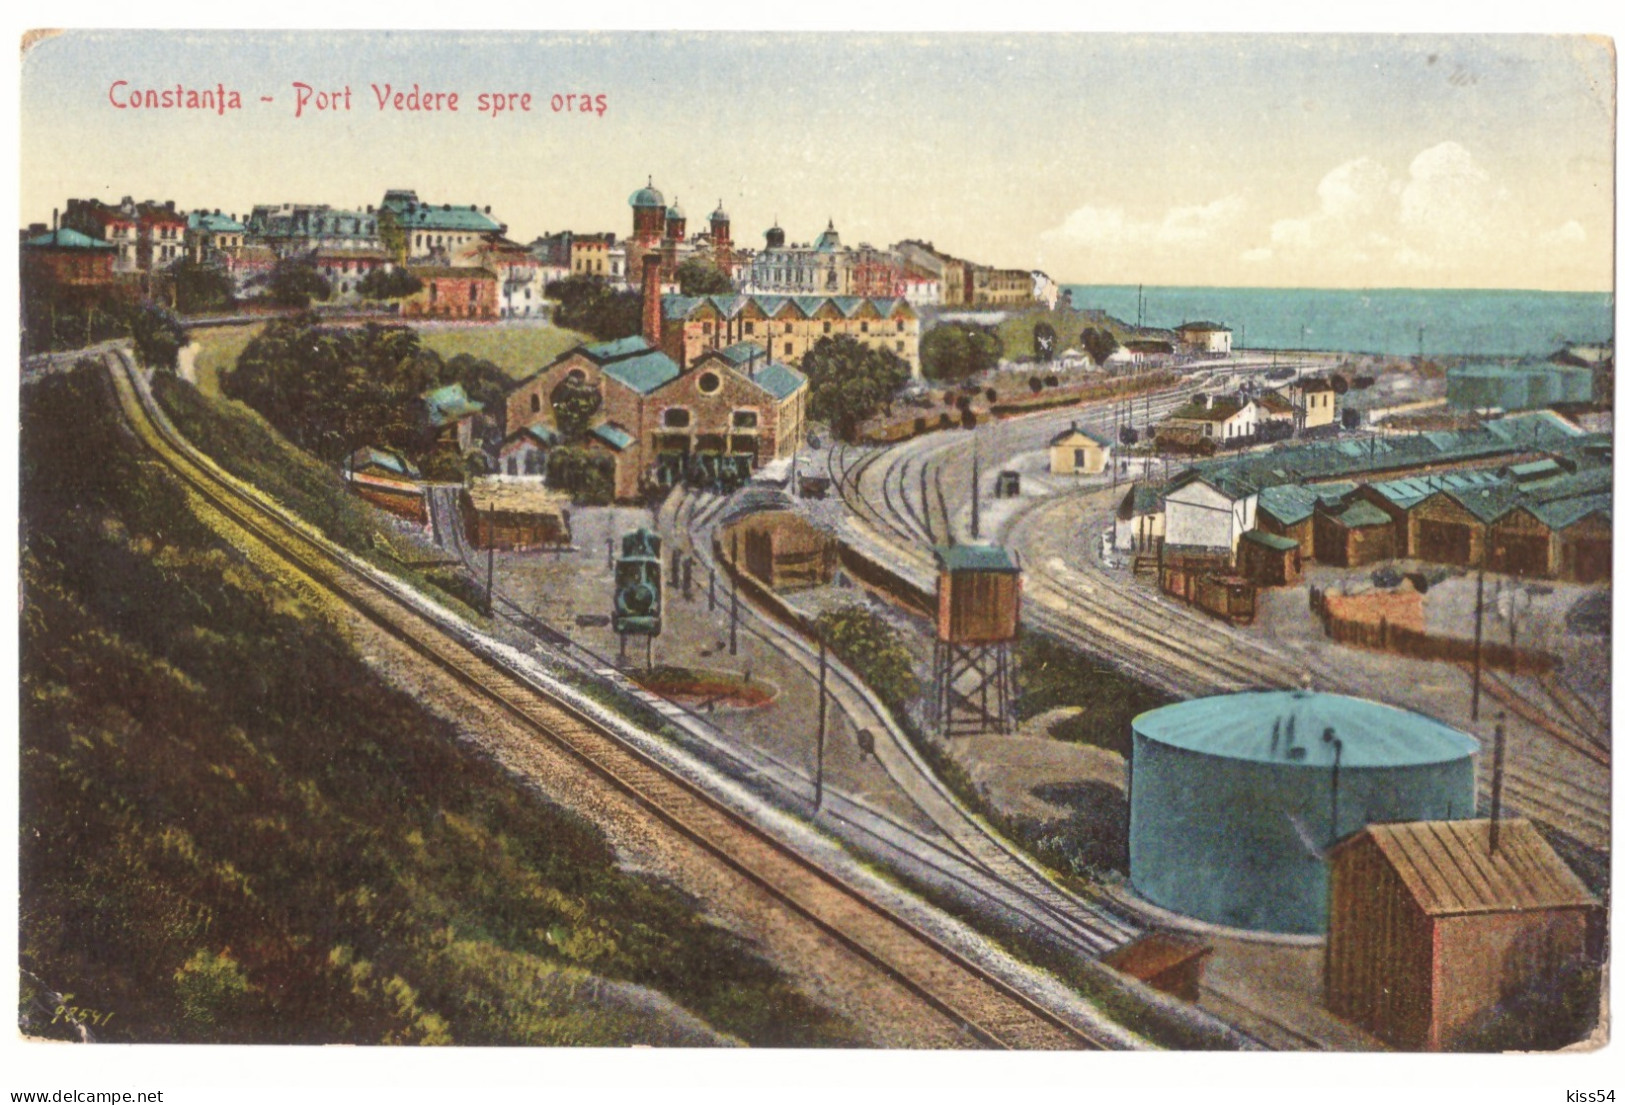 RO 38 - 21133 CONSTANTA, Harbor, Railways, Romania - Old Postcard - Unused - Roumanie